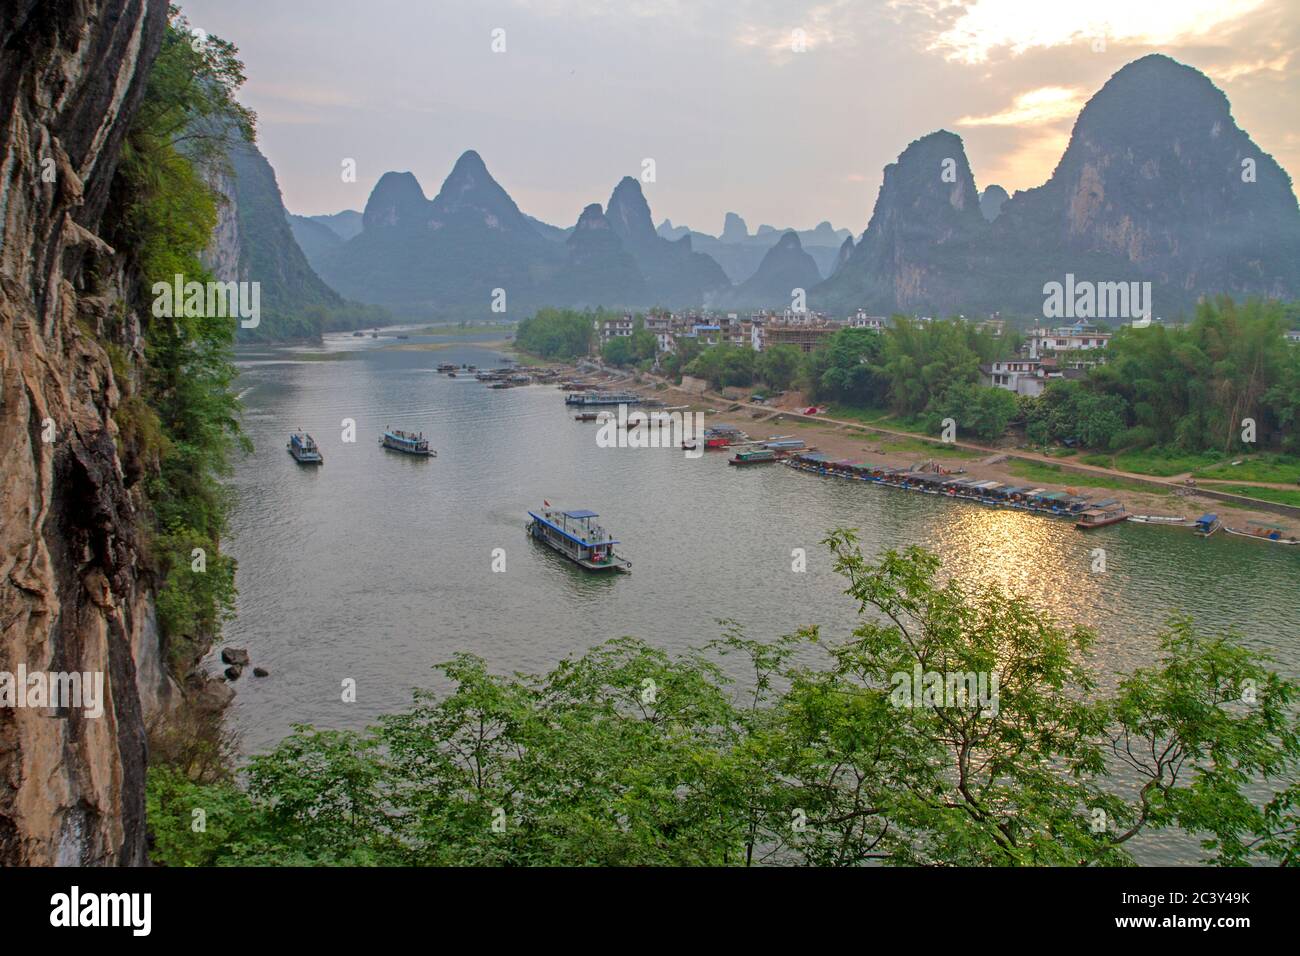 The Li River at Xingping Stock Photo